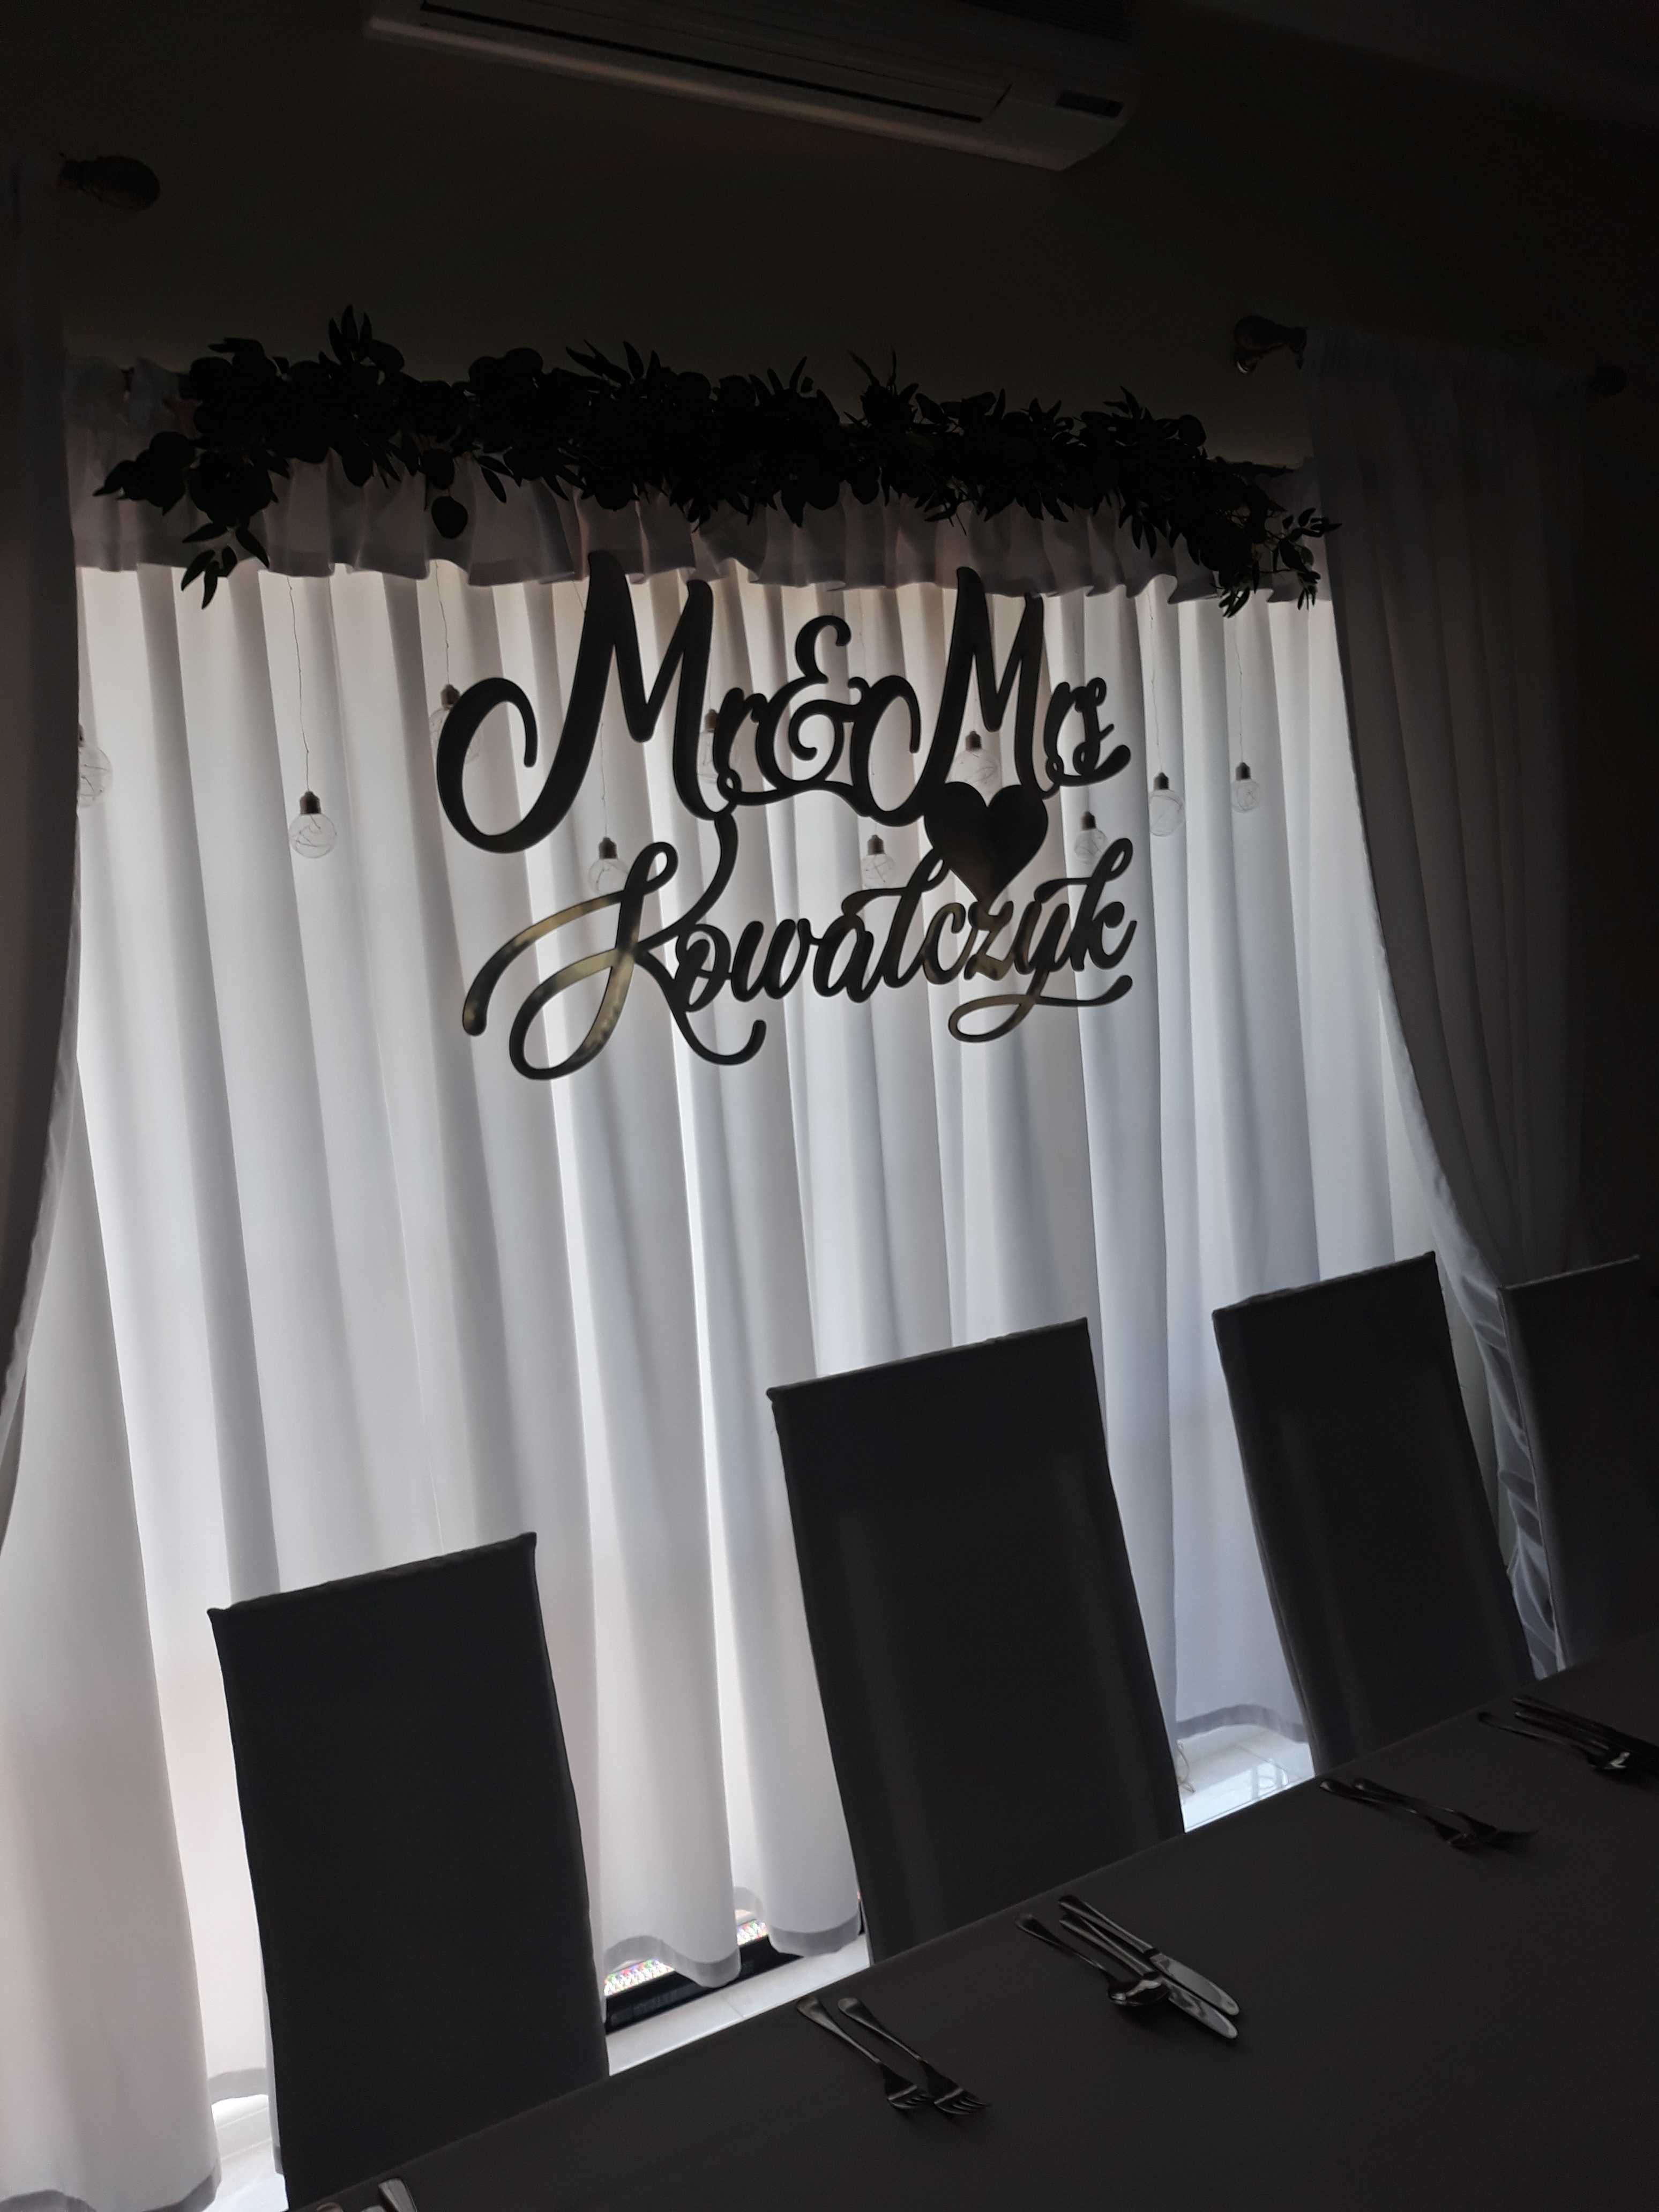 Wyjątkowy lustrzany napis np. ścianka weselna Mr & Mrs Kowalczyk